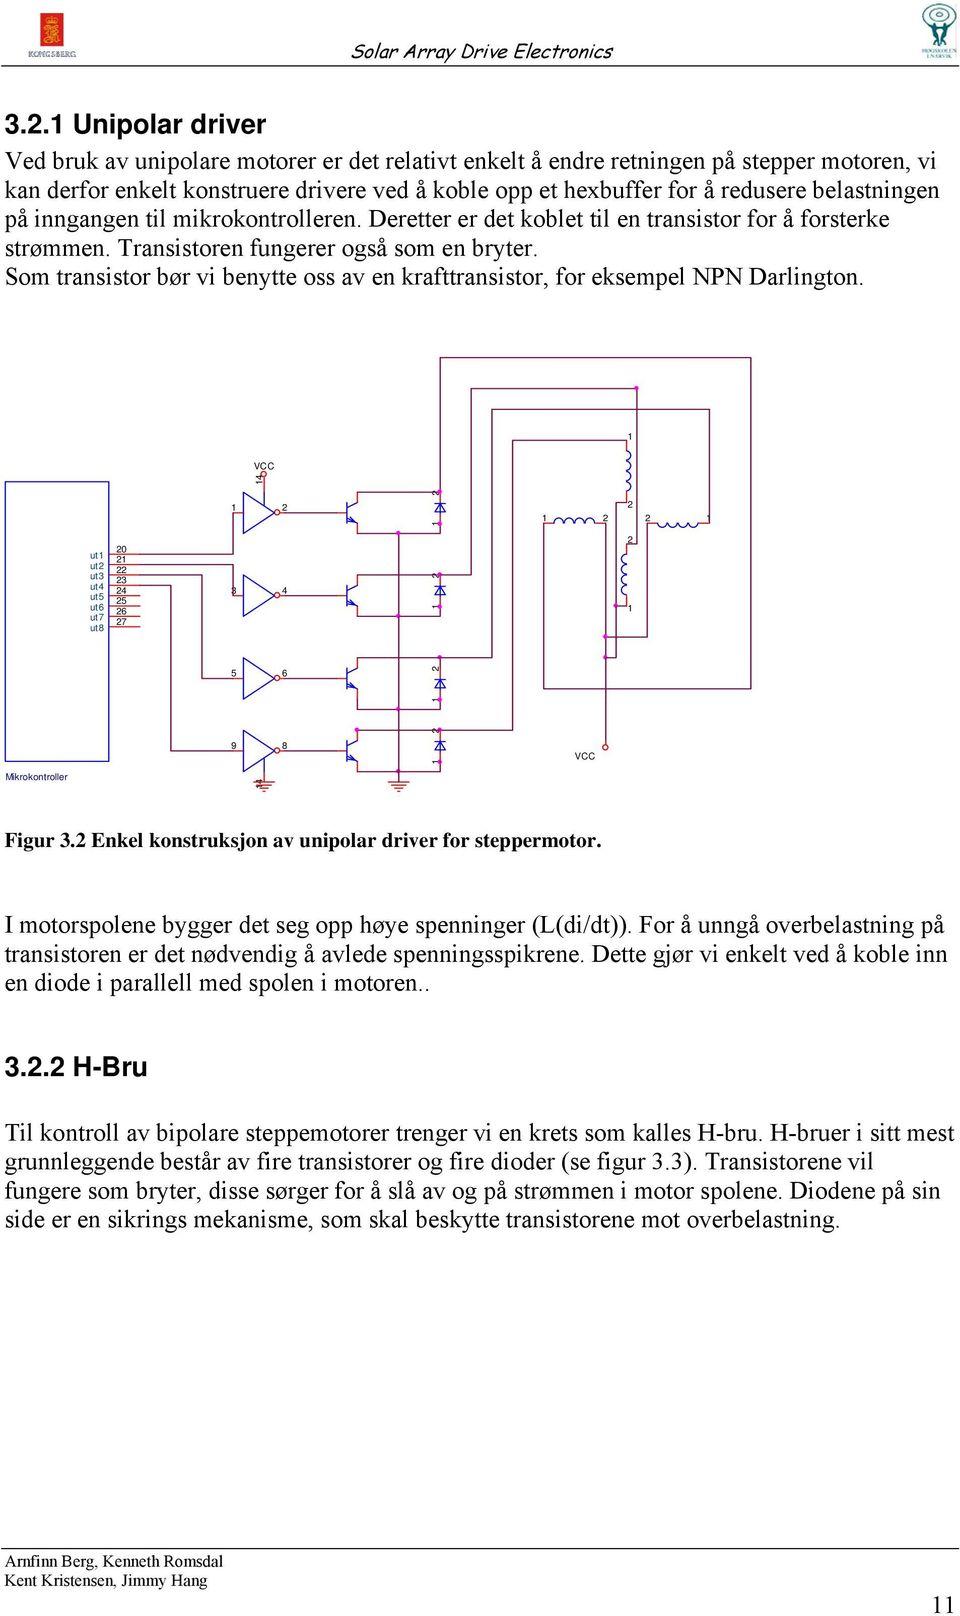 Som transistor bør vi benytte oss av en krafttransistor, for eksempel NPN Darlington. 1 VCC 14 1 1 1 1 ut1 ut ut3 ut4 ut5 ut6 ut7 ut8 0 1 3 4 5 6 7 3 4 1 1 5 6 1 9 8 1 VCC ikrokontroller 14 Figur 3.